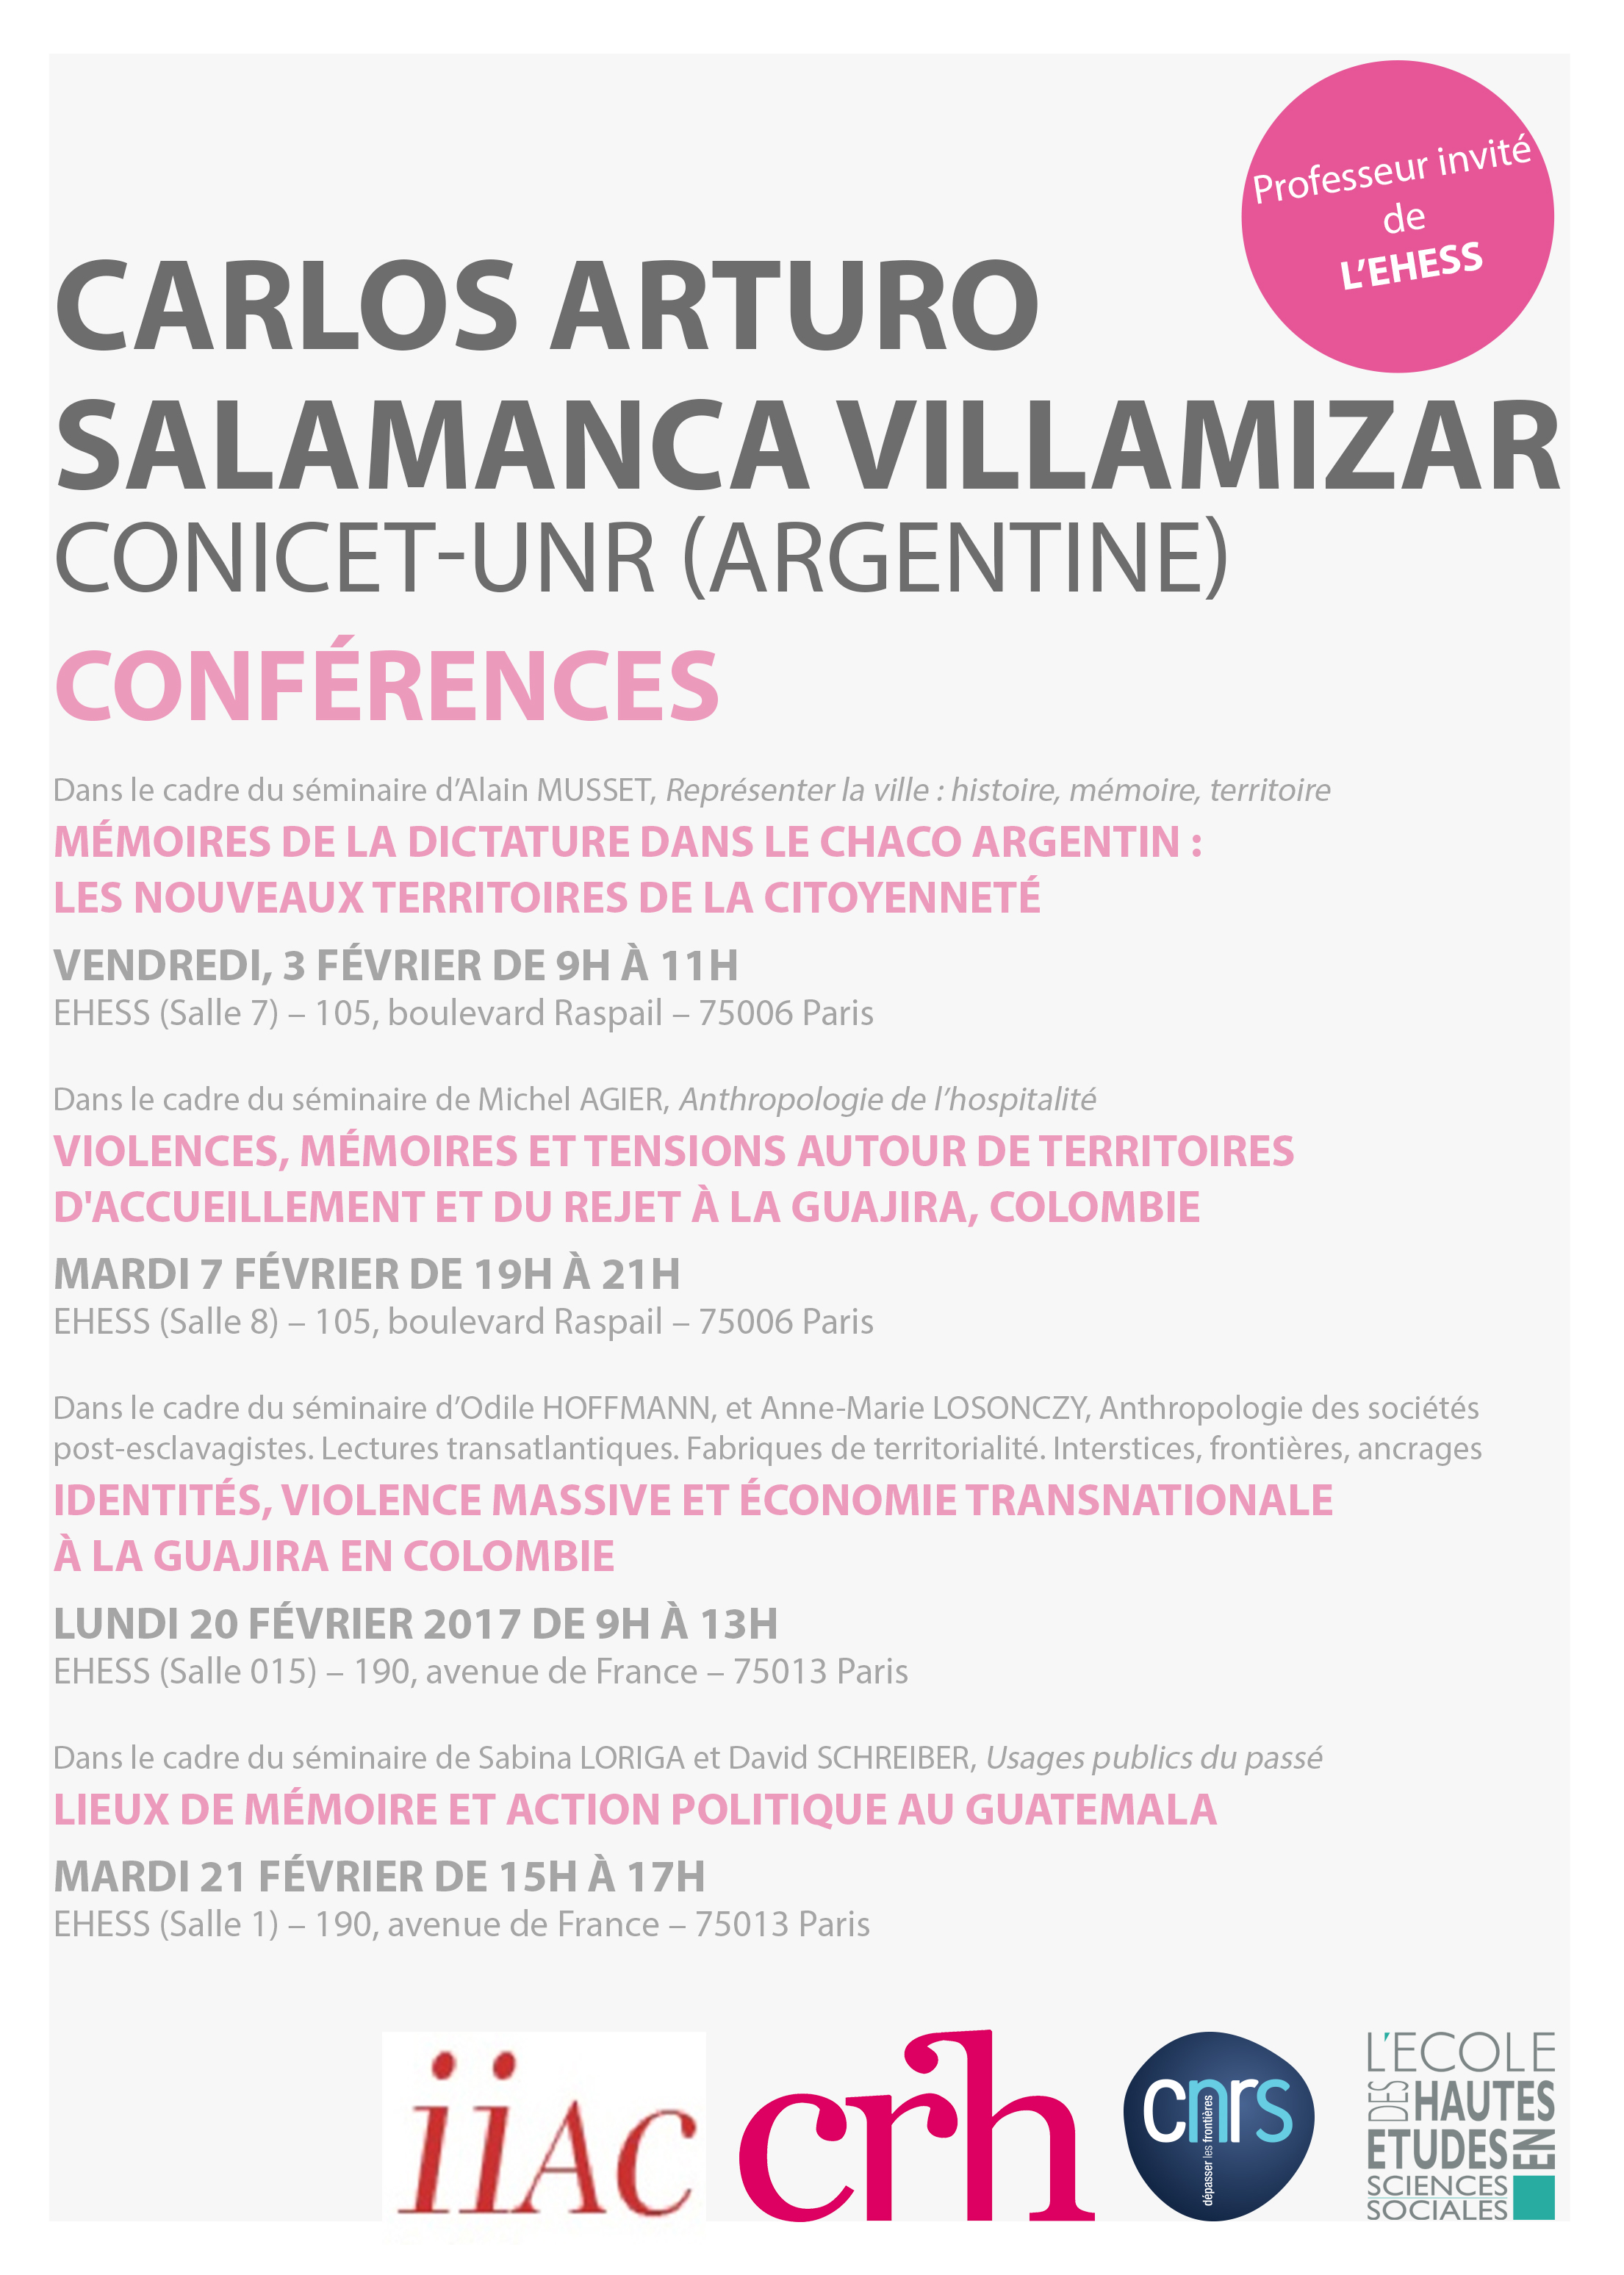 Conférences de Carlos Arturo Salamanca Villamizar